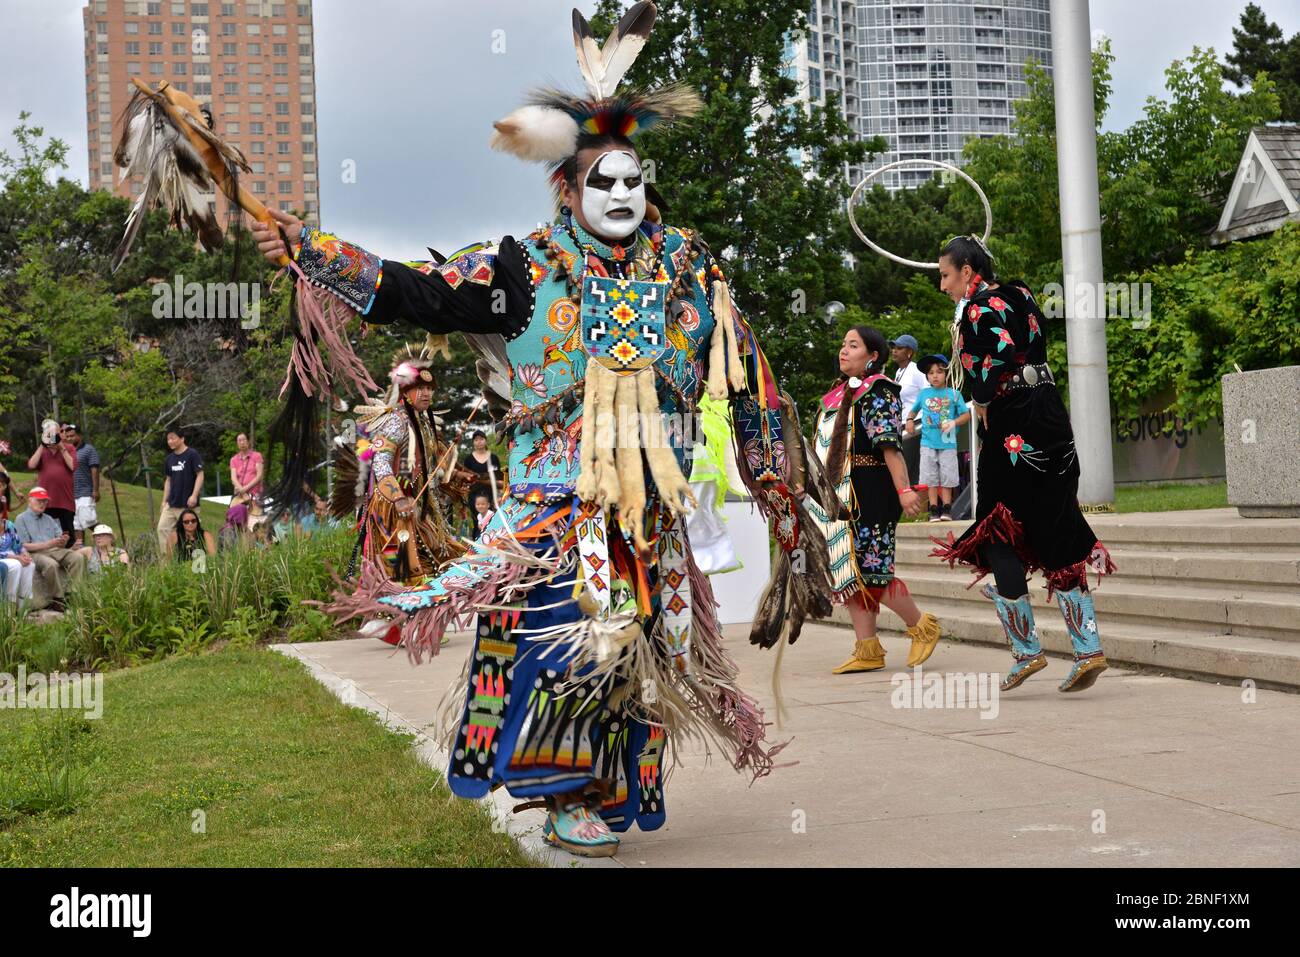 Toronto, Ontario / Canadá - 01 de julio de 2017: Indígenas nativos en la ropa tradicional nativa canadiense realizando la danza tradicional en el ca Foto de stock